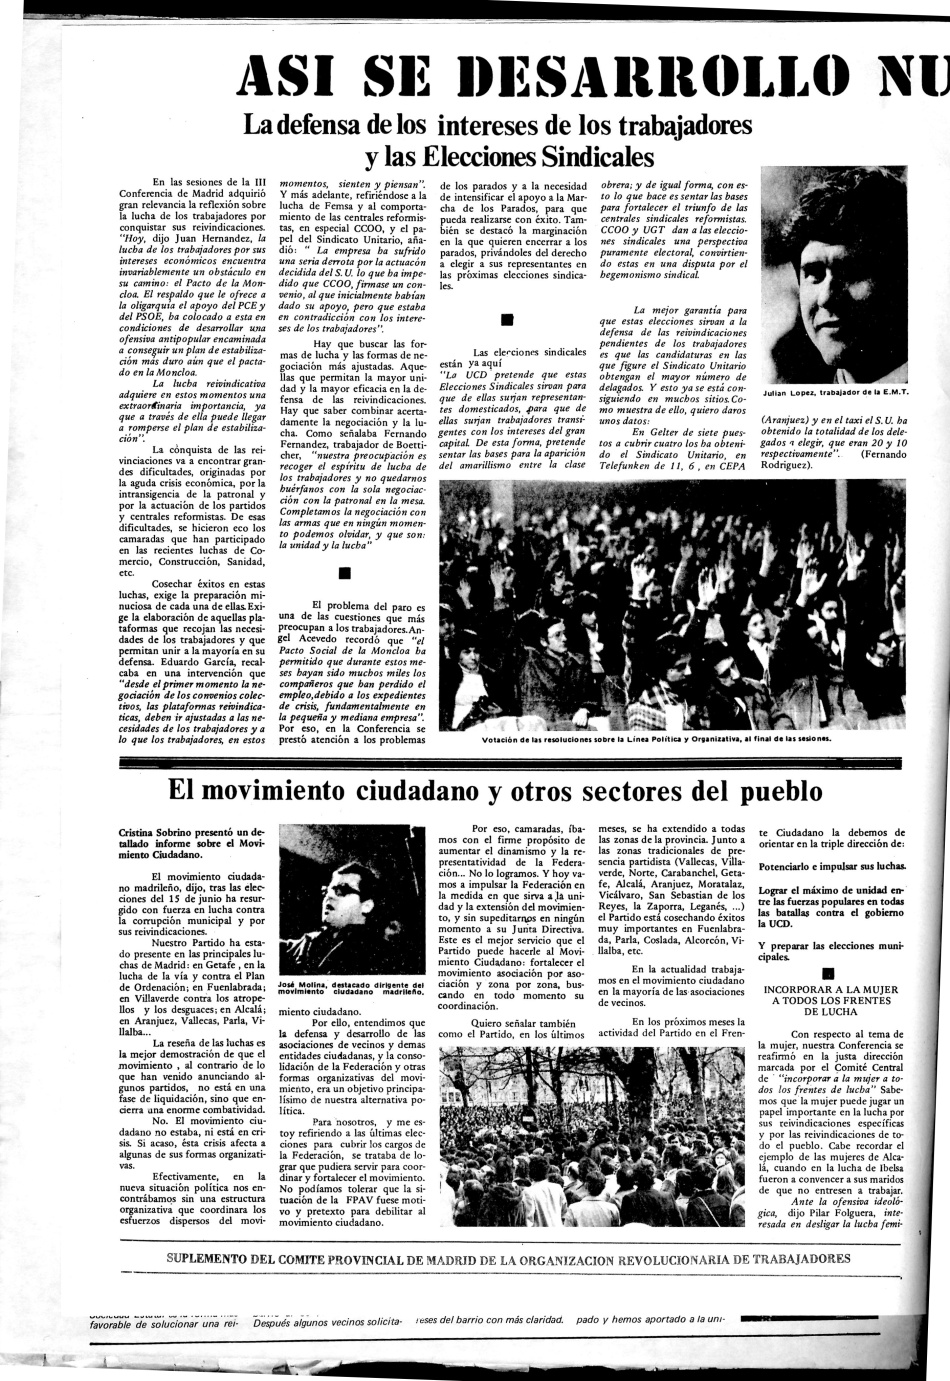 III CONFERENCIA PROVINCIAL DE MADRID DE LA organizacion Revolucionaria de los Trabajadores (ORT). POR UNA DEMOCRACIA POPULAR. IMPORTANTE DISCURSO DE JOSÉ SAN ROMA. LA DEFENSA DE LOS INTERESES DE LOS TRABAJADORES Y LAS ELECCIONES SINDICALES. LA CONSTRUCCION DEL PARTIDO (ORT). POR LA UNIDAD DEL PUEBLO.